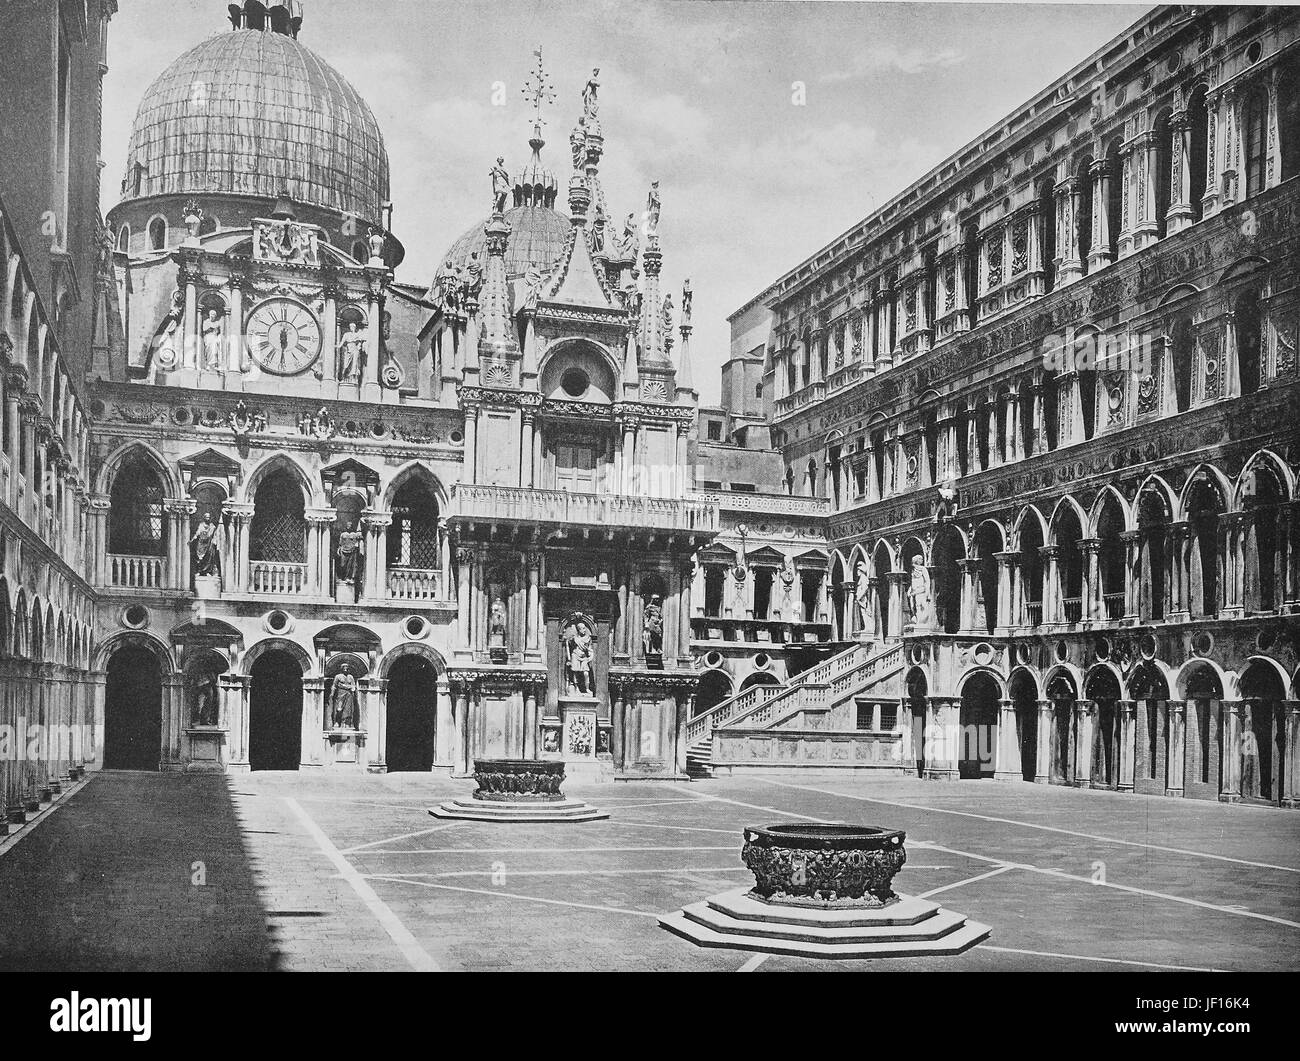 Photo historique de la cour intérieure du palais des Doges, en face de la basilique San Marco, Venise, Venezia, Italie, amélioration numérique reproduction à partir d'un tirage original de 1890 Banque D'Images